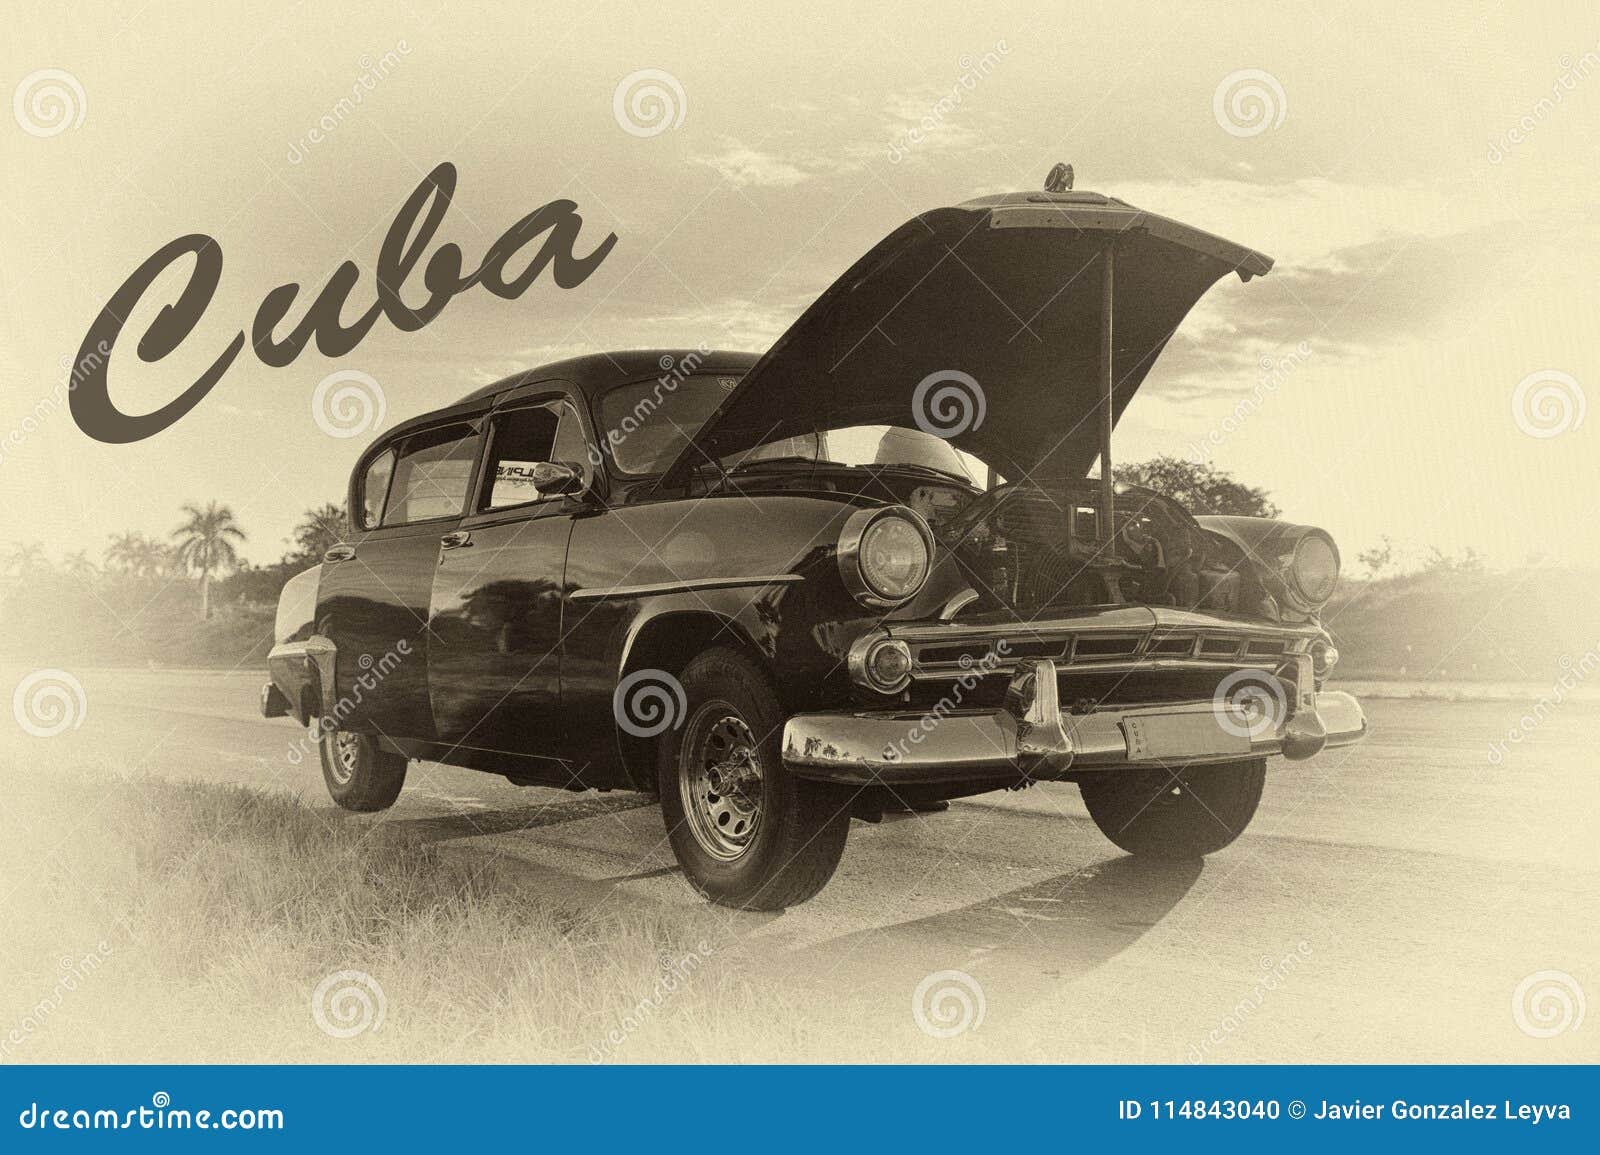 poster of old car in havana